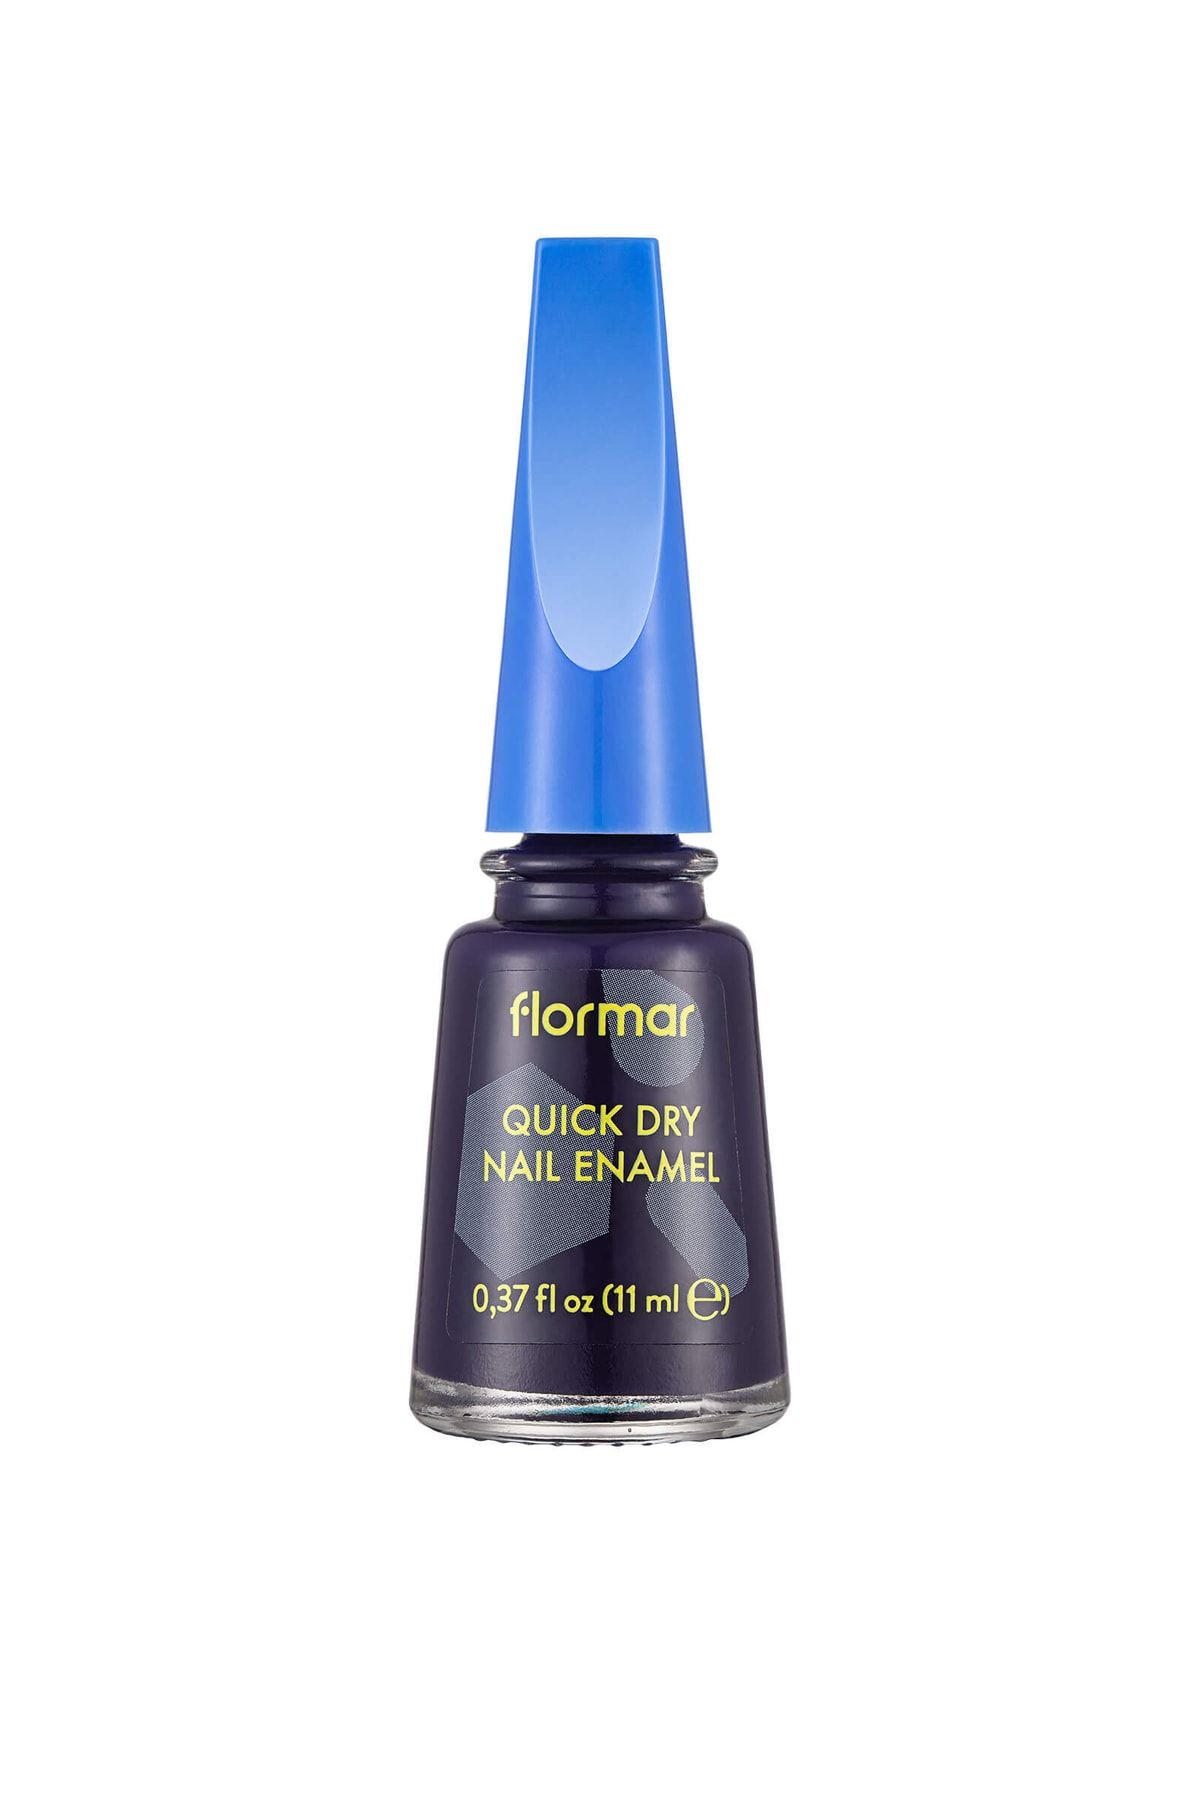 Flormar Hızlı Kuruyan Parlak Oje - Quick Dry Nail Enamel - Qd41 Mıdnıght - 8682536019293